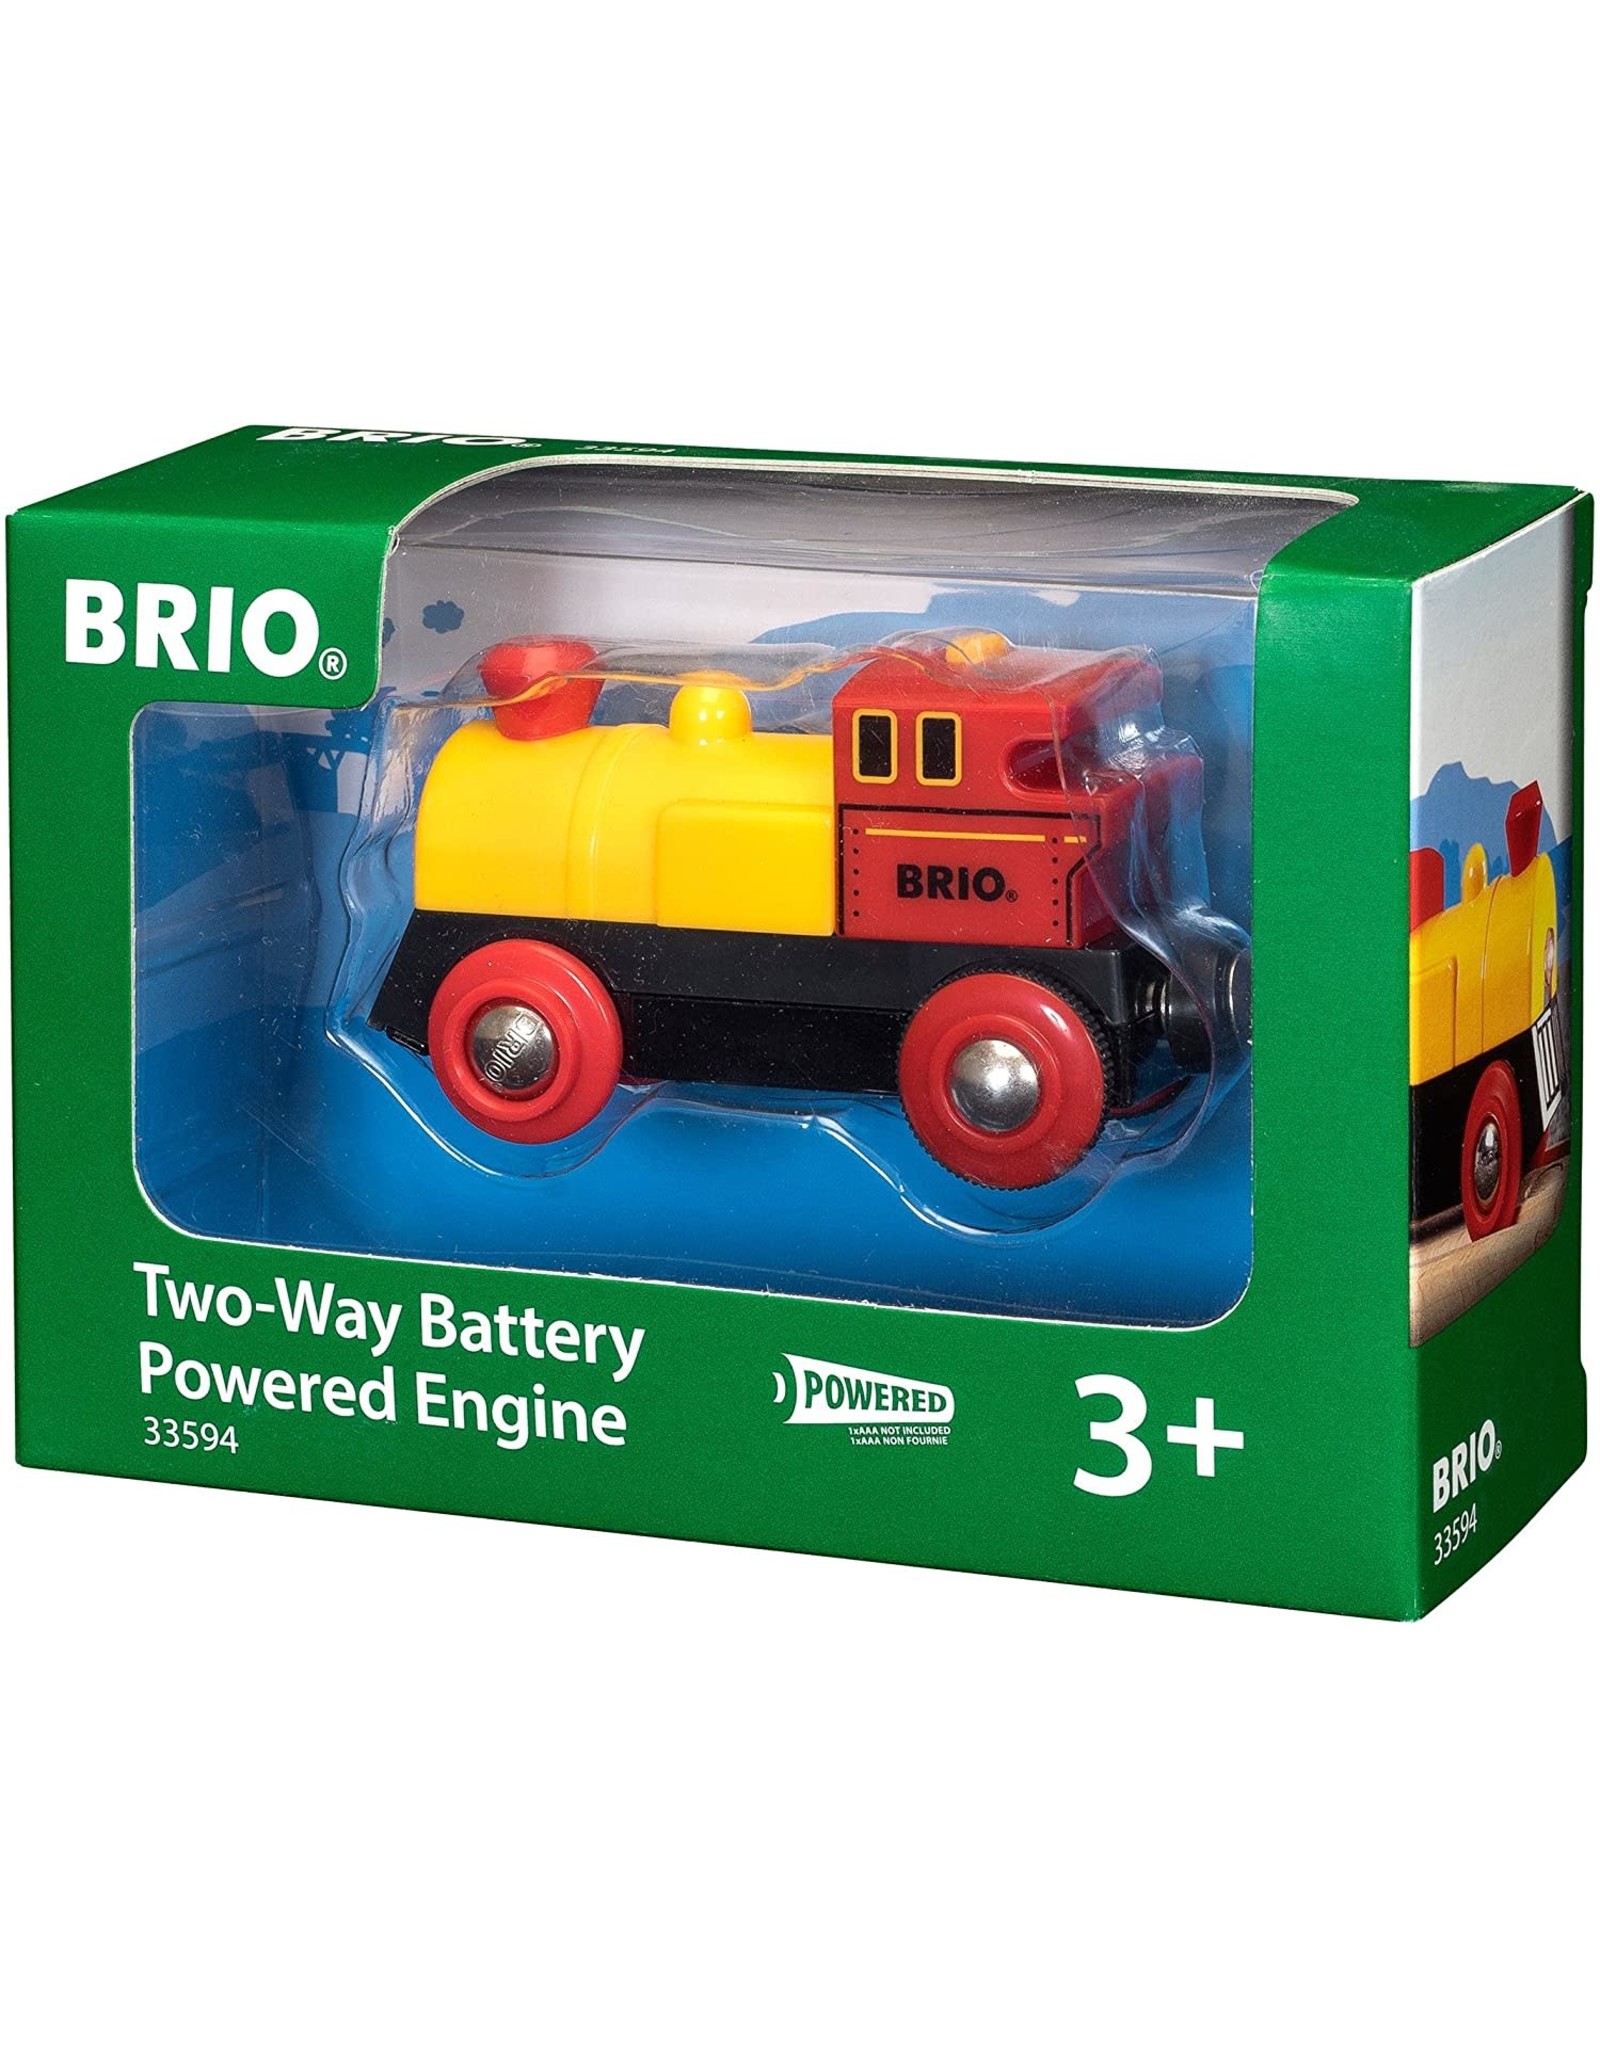 Brio BRIO Two Way Battery Power Engine